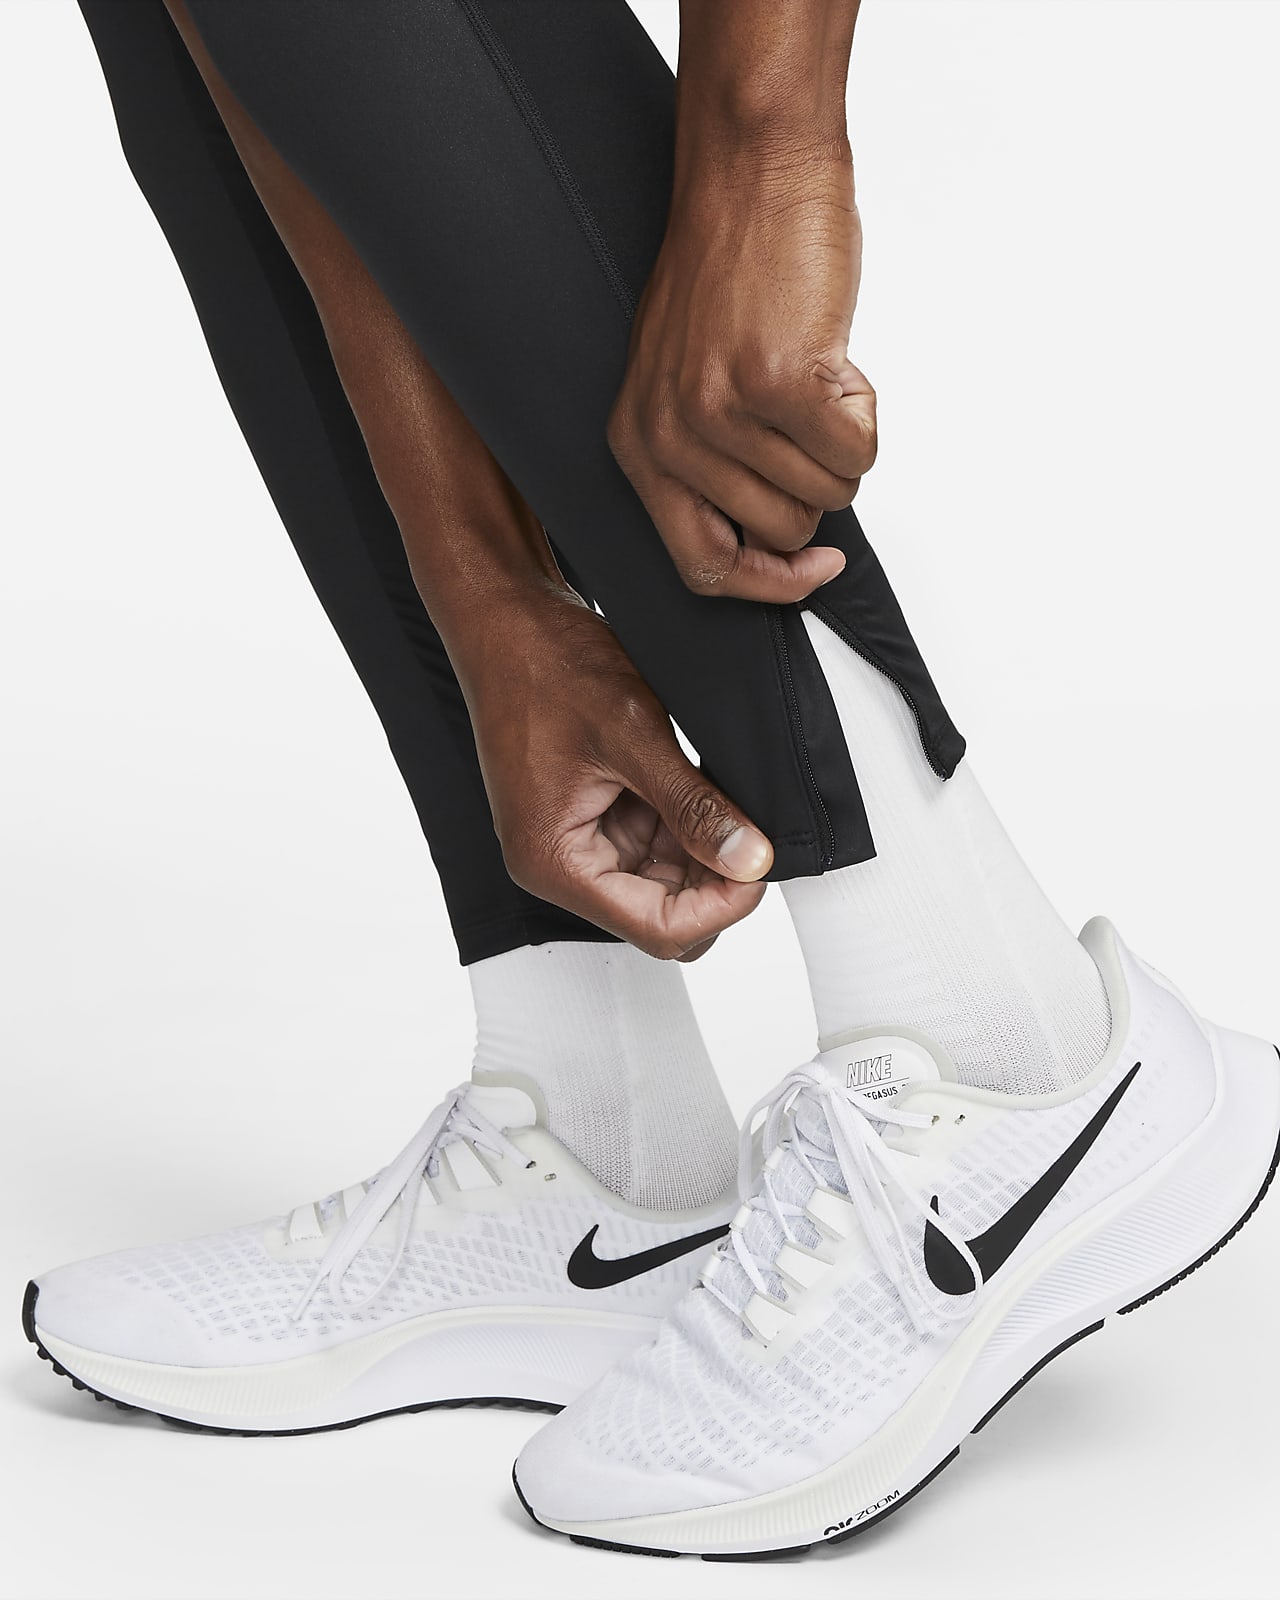 Nike Storm-FIT Phenom Elite Leggings - Farfetch